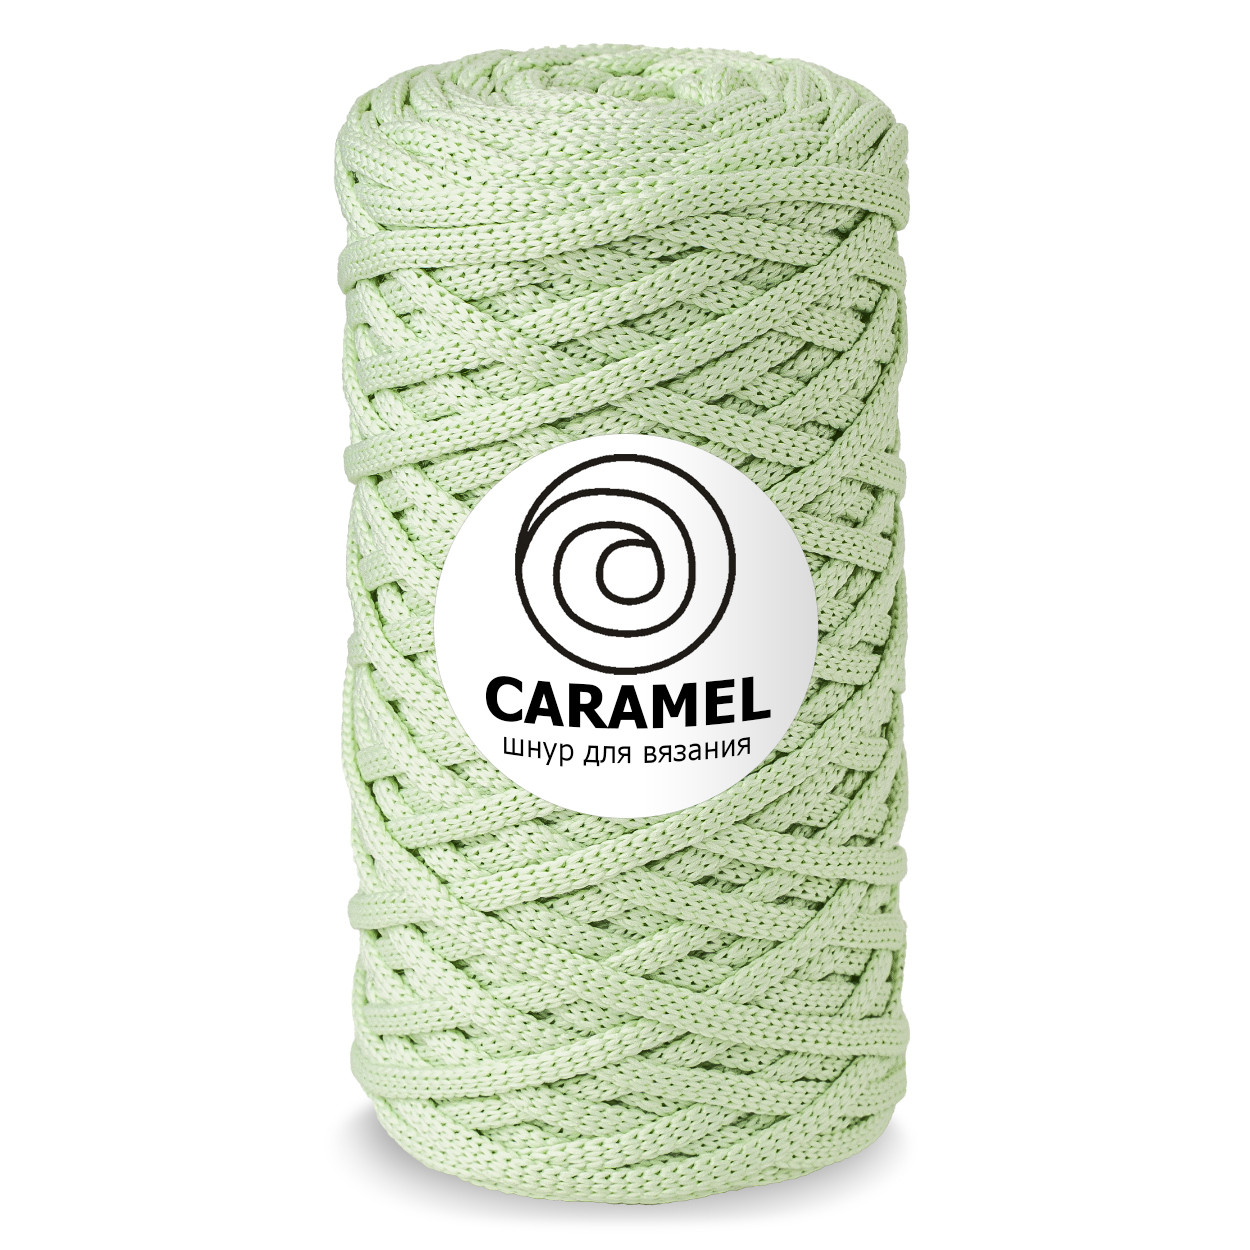 Шнур для вязания полиэфирный Caramel 5 мм, цвет фисташка